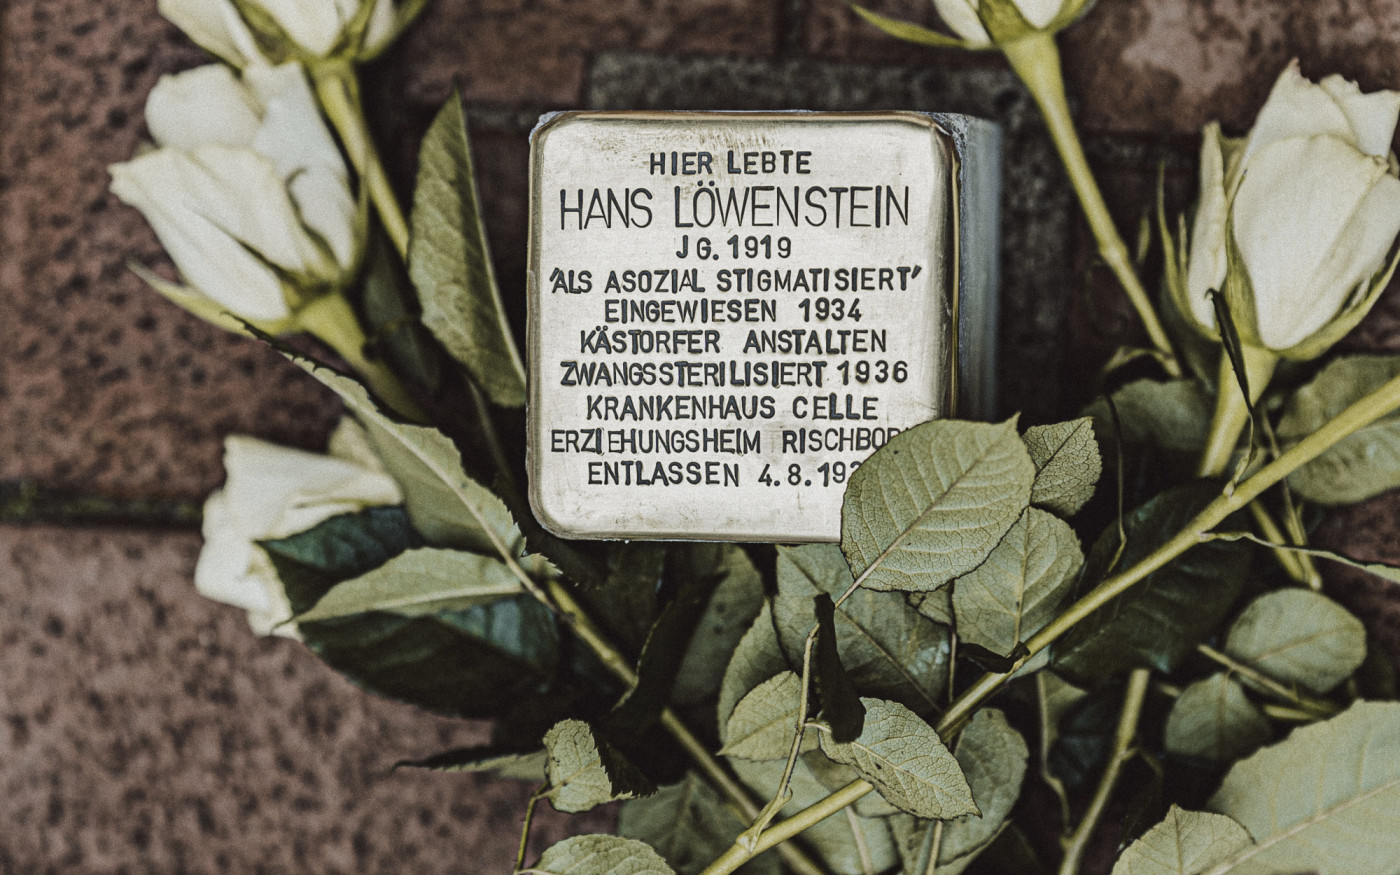 Zwangssterilisiert wegen „Schwachsinn“: NS-Opfer Hans Löwenstein lebte im Kästorfer Erziehungsheim Rischborn